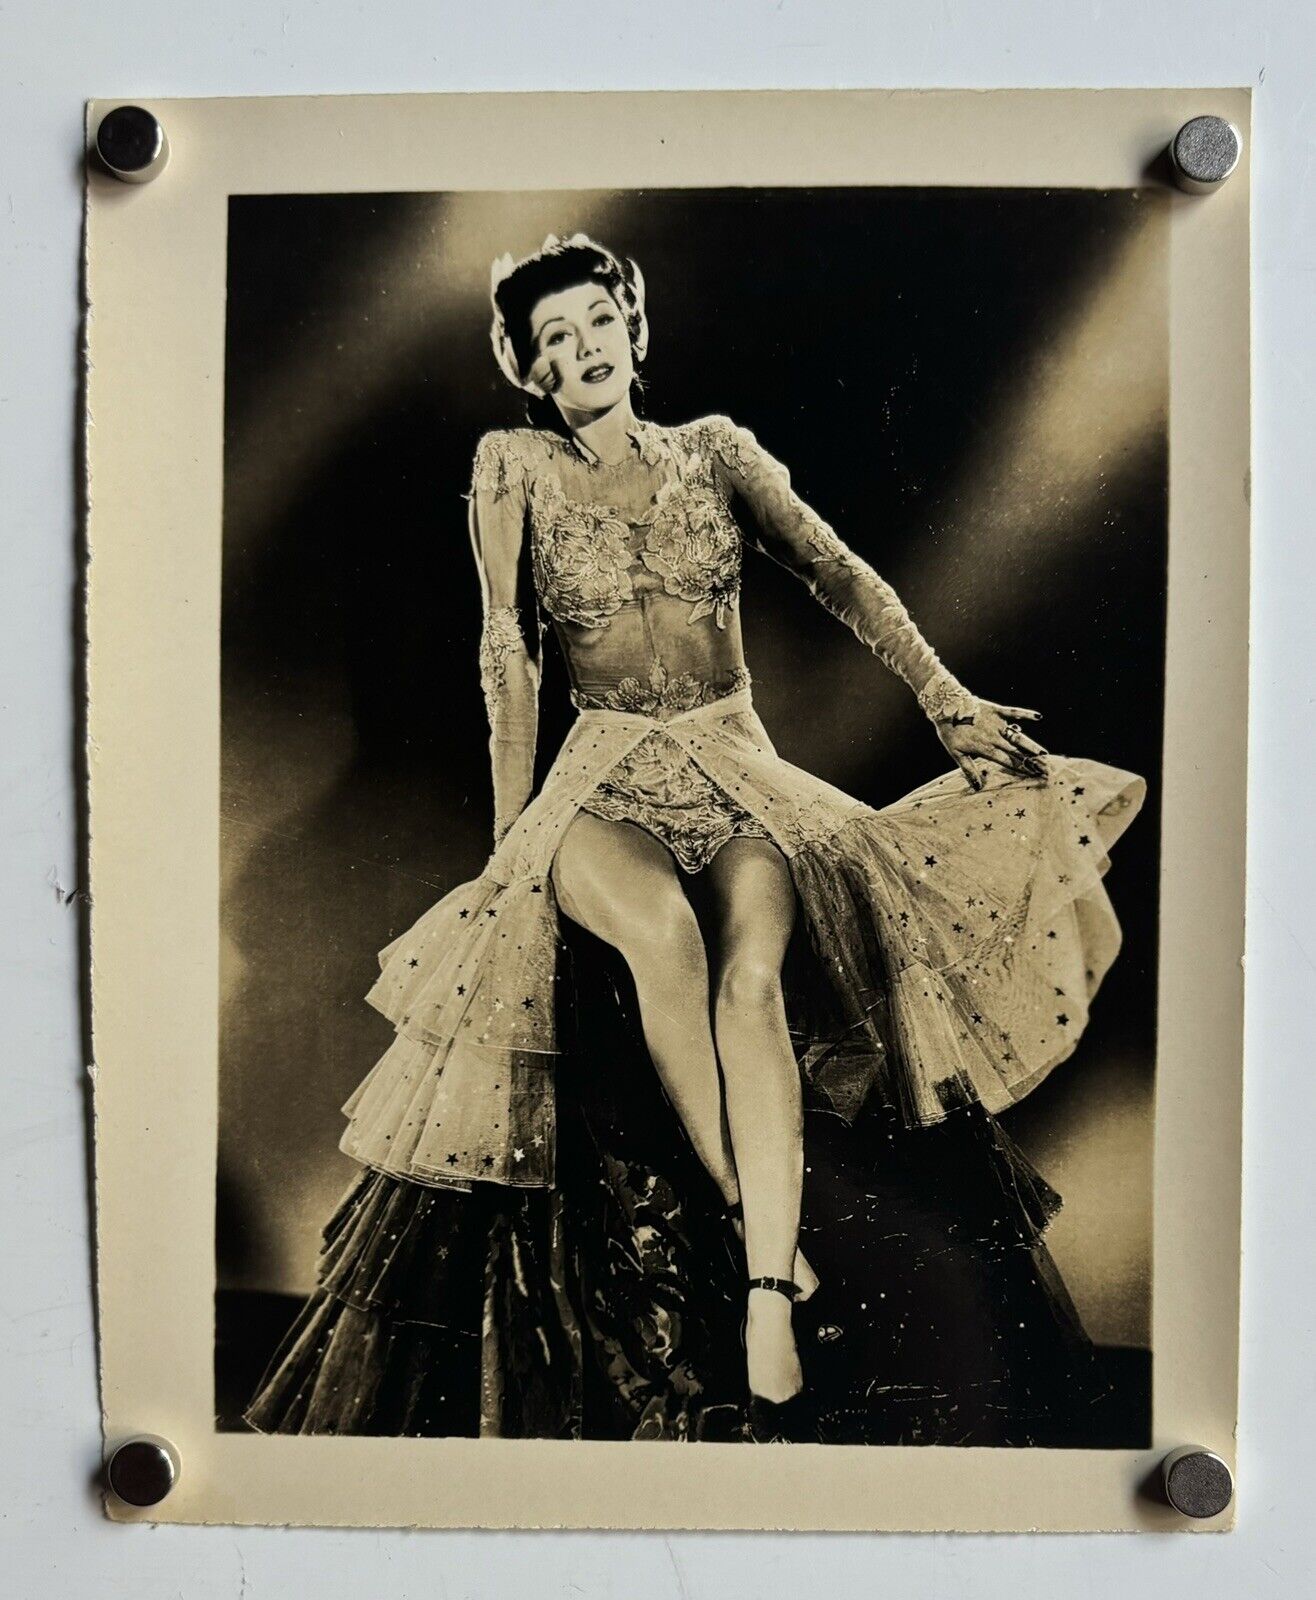 MARIA MONTEZ Original Vintage c1940’s Sepia 5x4” STUDIO Glamorous Photograph